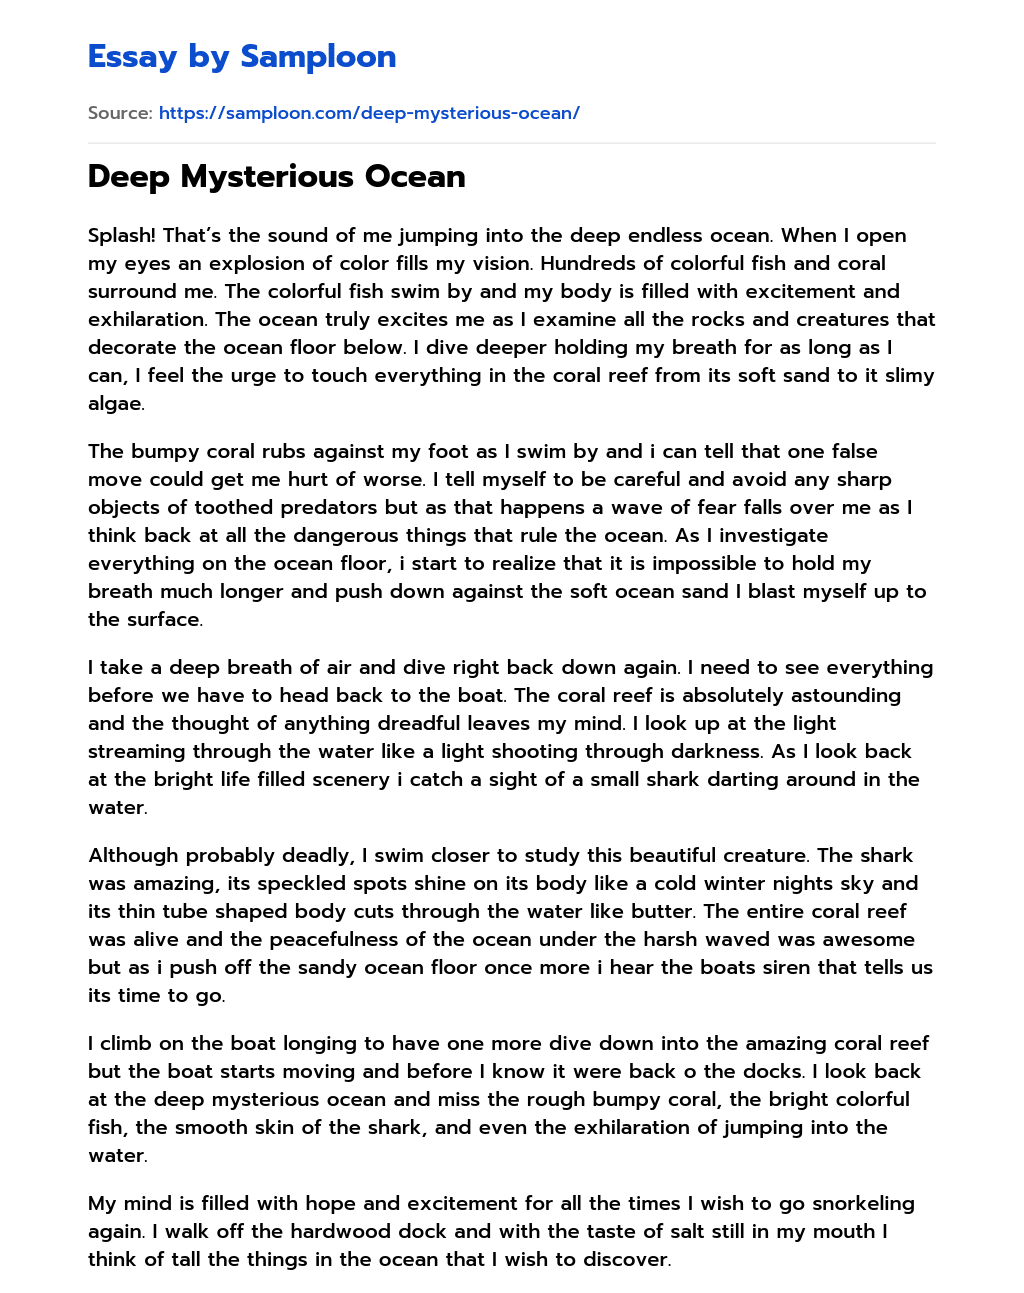 Deep Mysterious Ocean essay